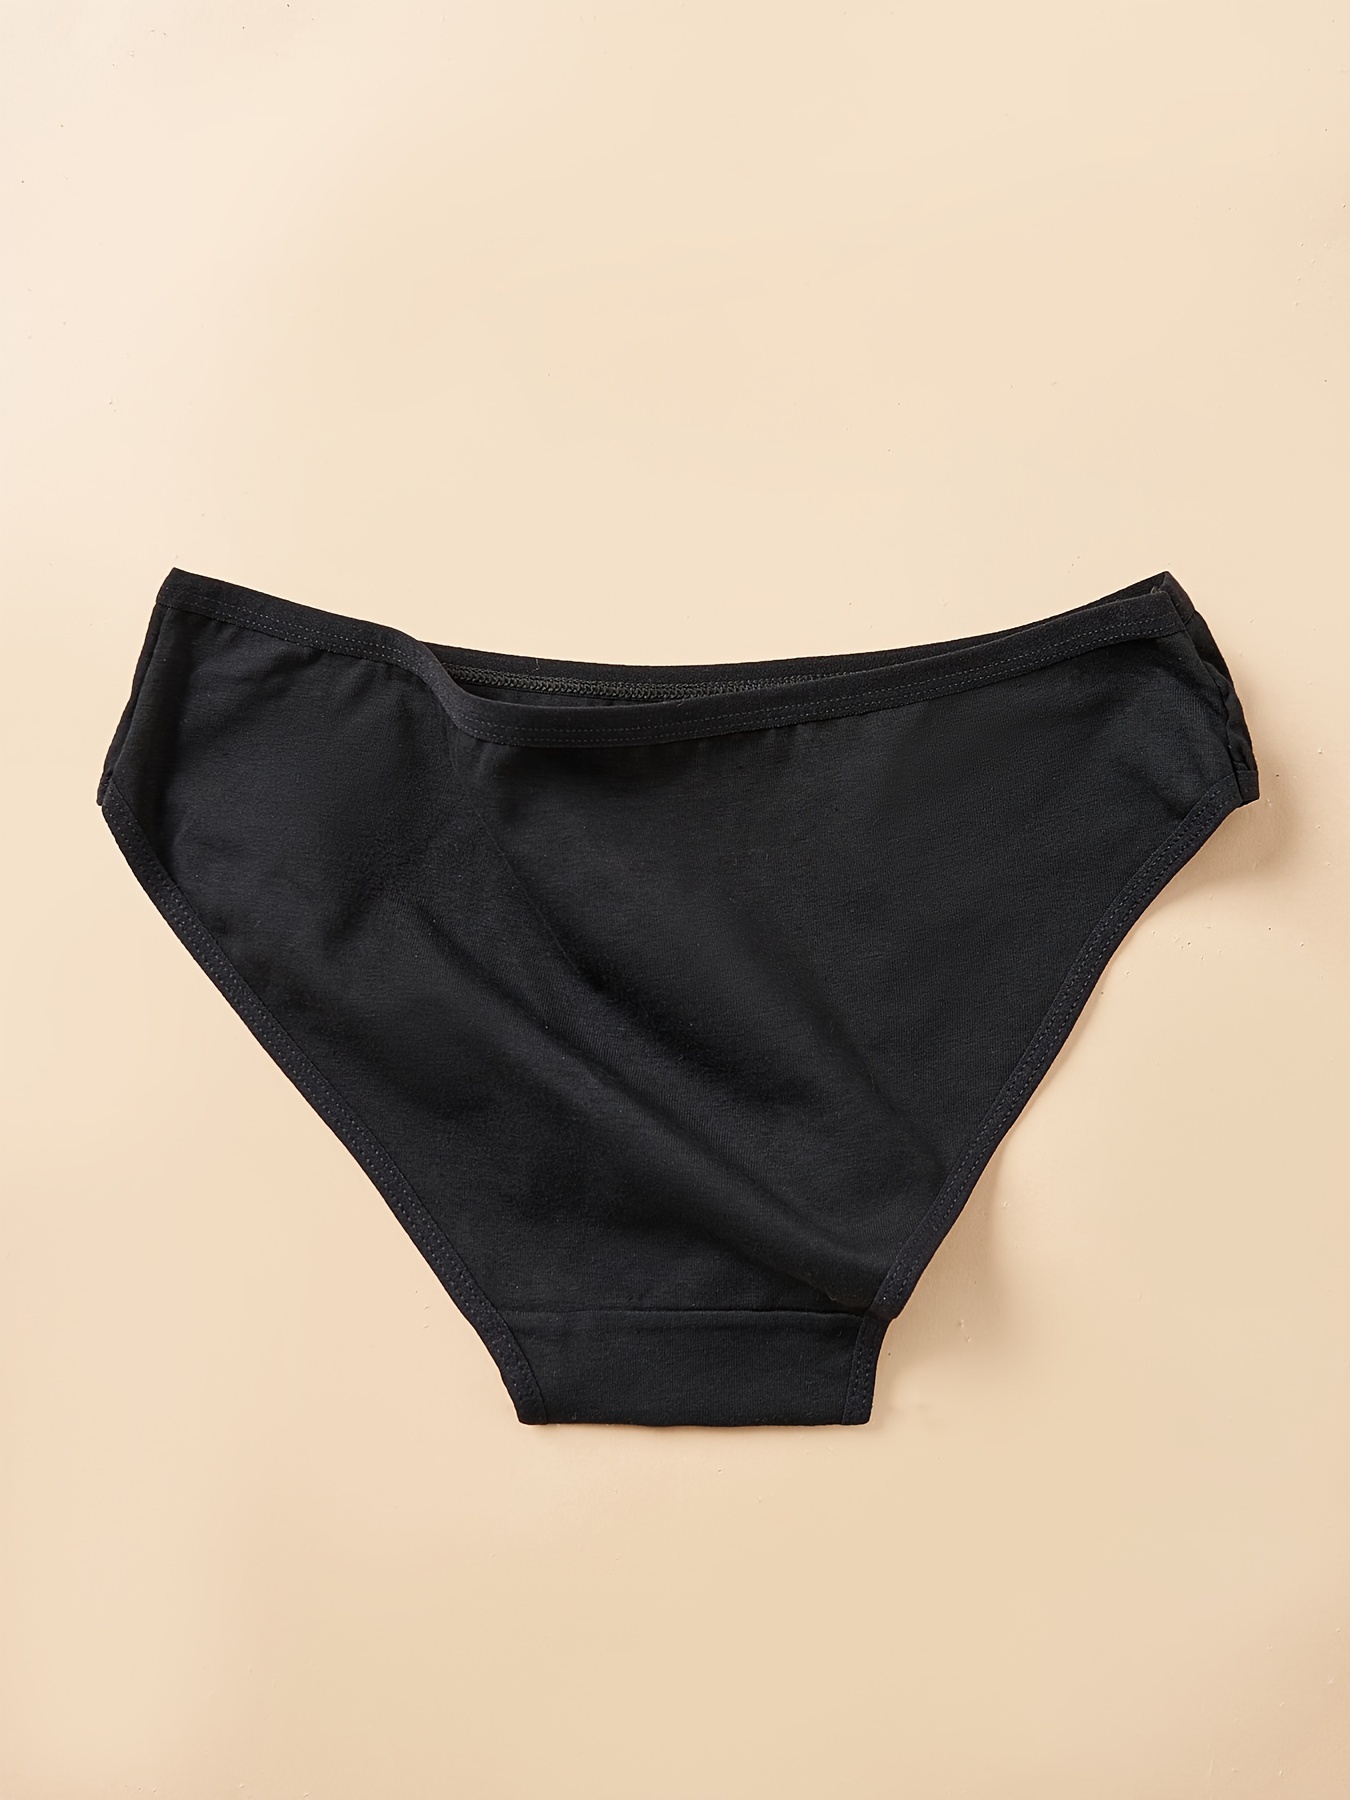  Daisy Flower Women's Breathable Underwear Bikini